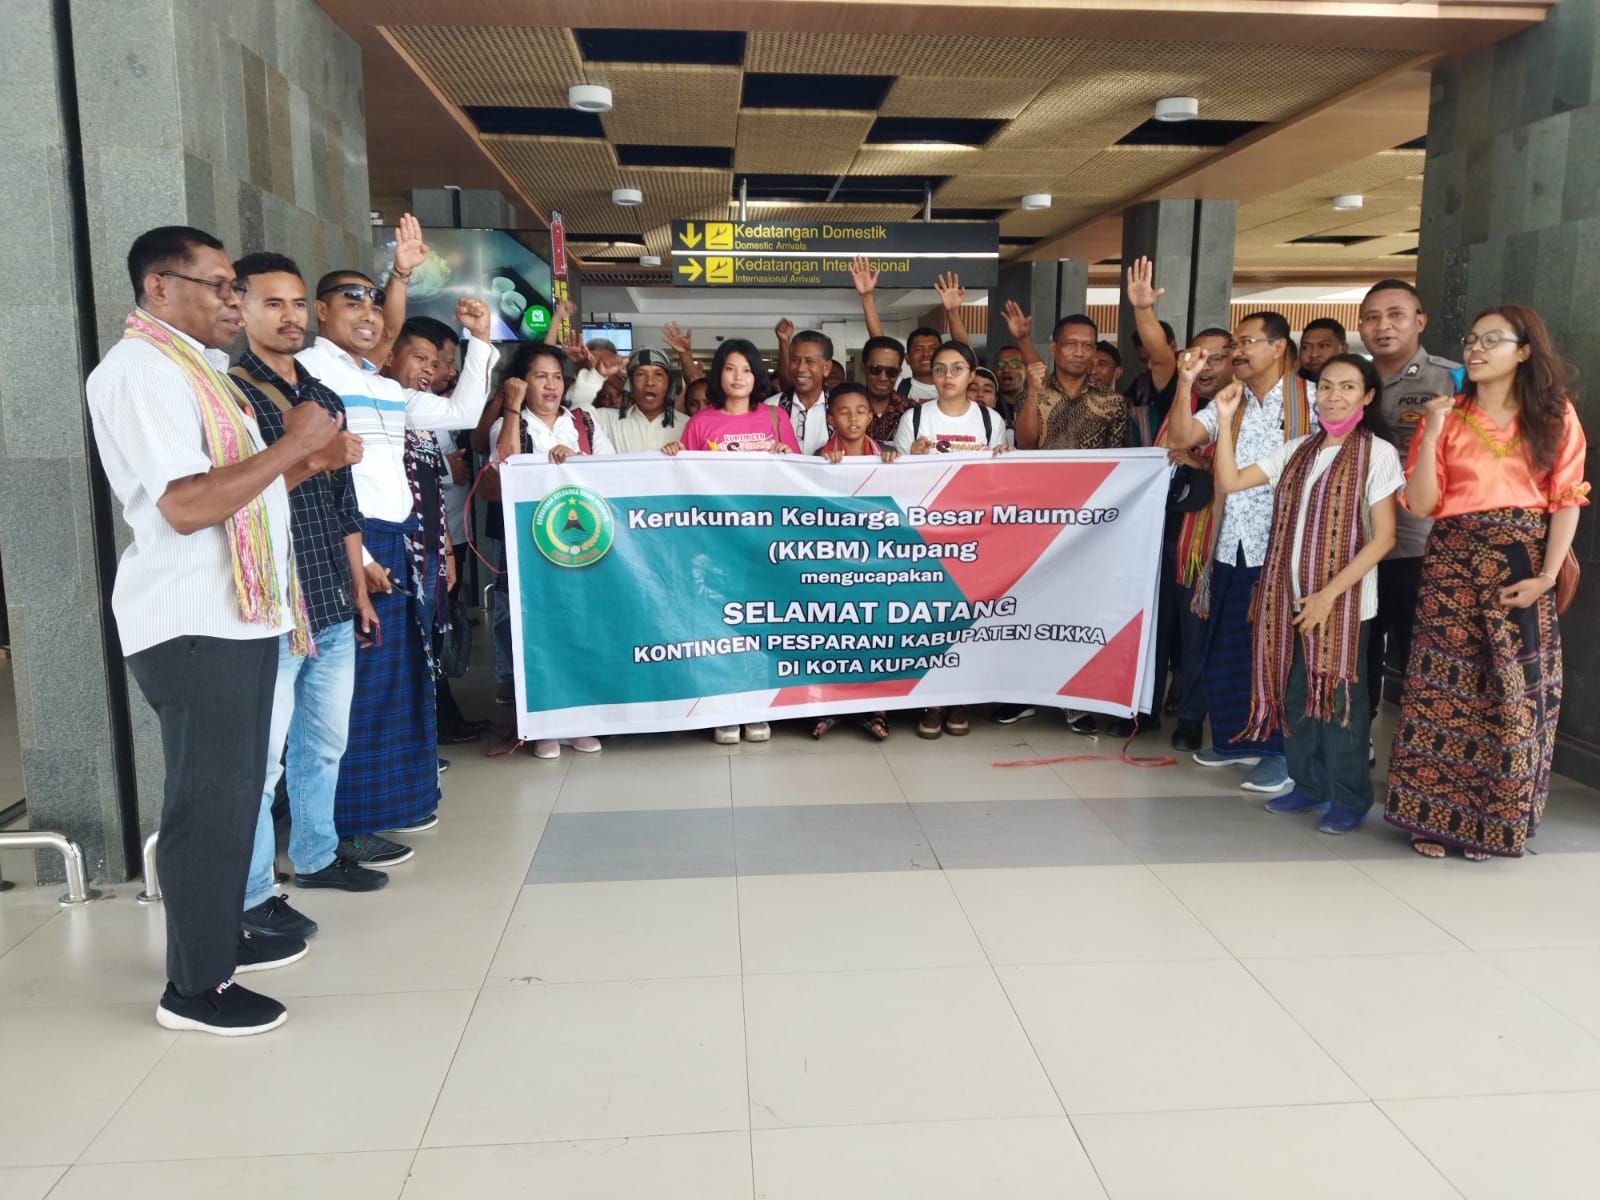 Penyambutan Kontingen Pesparani Sikka di Bandara Eltari Kupang oleh KKBM Kupang di Bandara Eltari, Jumad 2 Agustus 2022